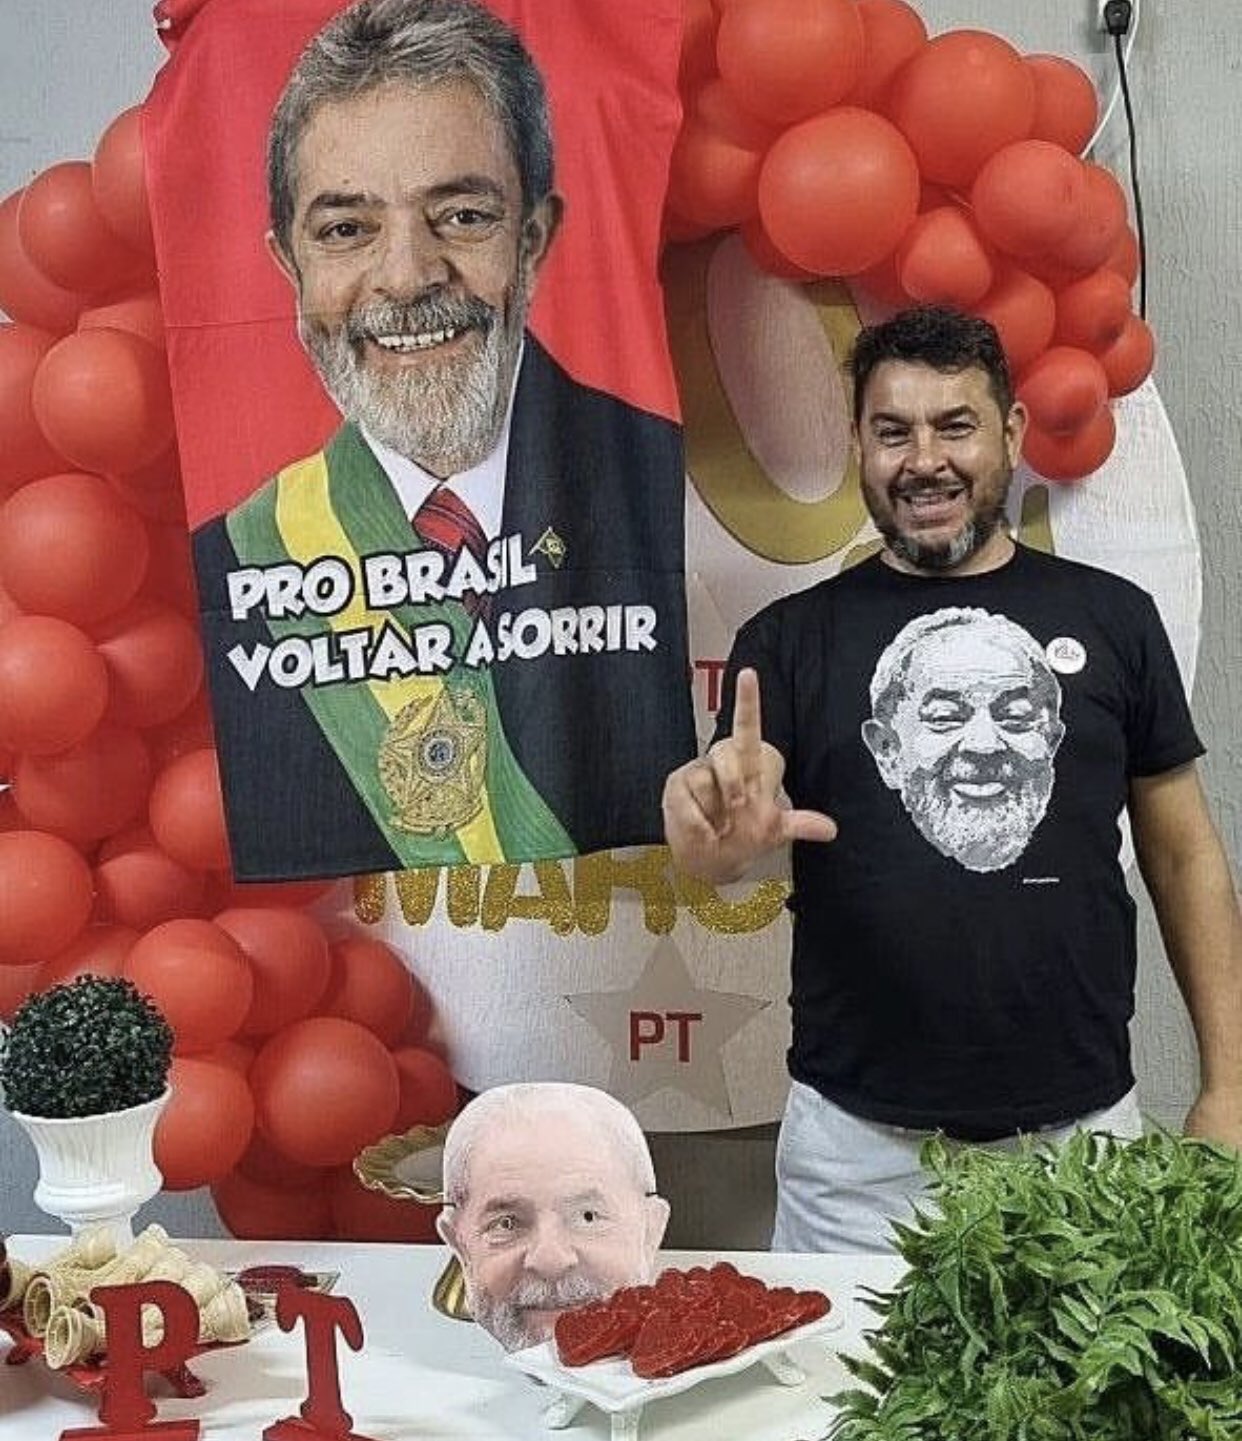 Un seguidor de Bolsonaro asesinó a un dirigente del partido político de Lula da Silva